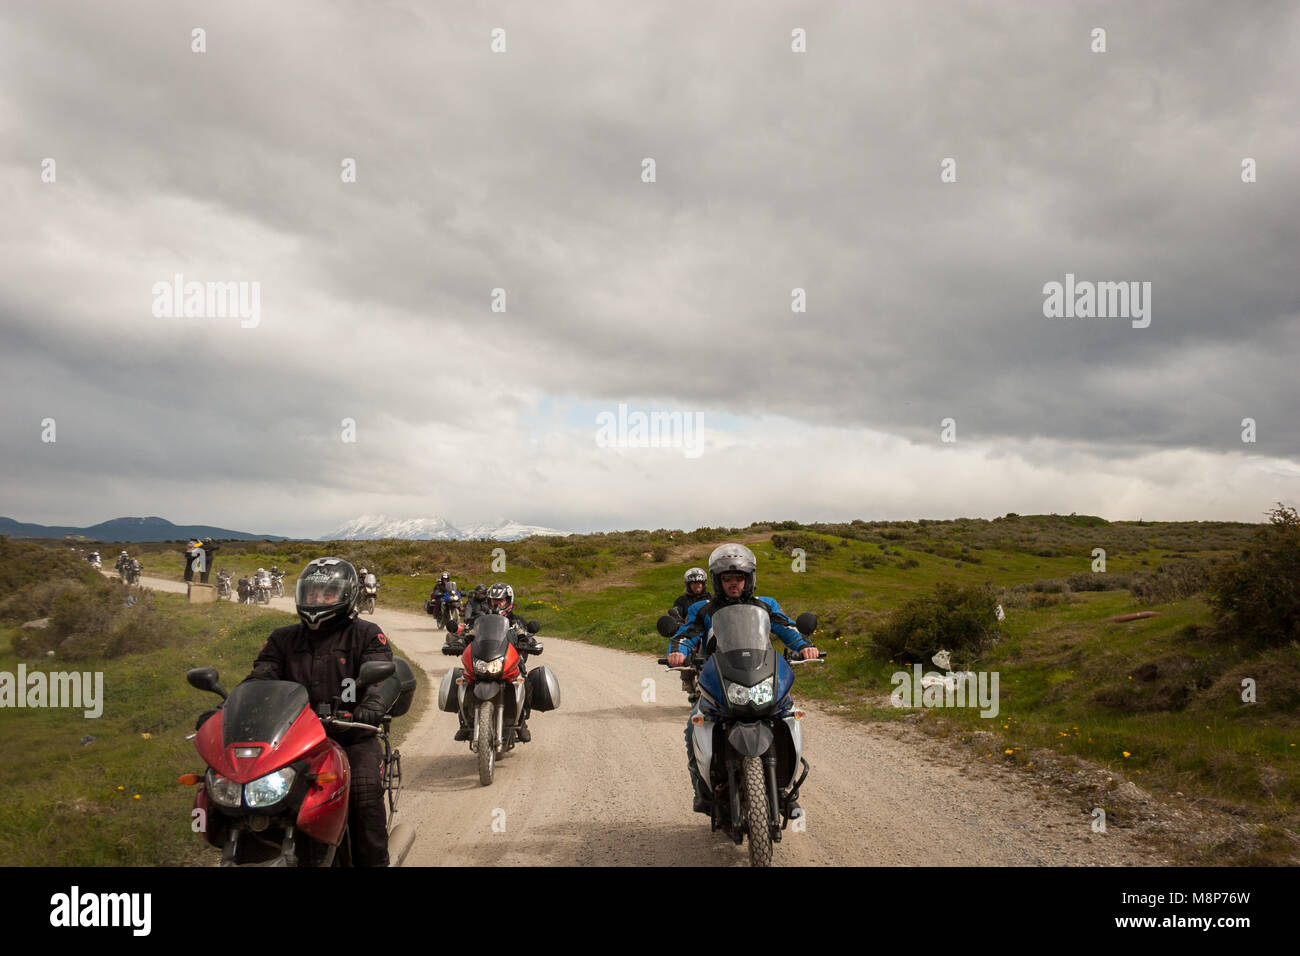 Motorcylists si riuniscono una volta all'anno in Ushuaia, Argentina, per il soddisfare noto come 'Latitudine 54.". Foto Stock